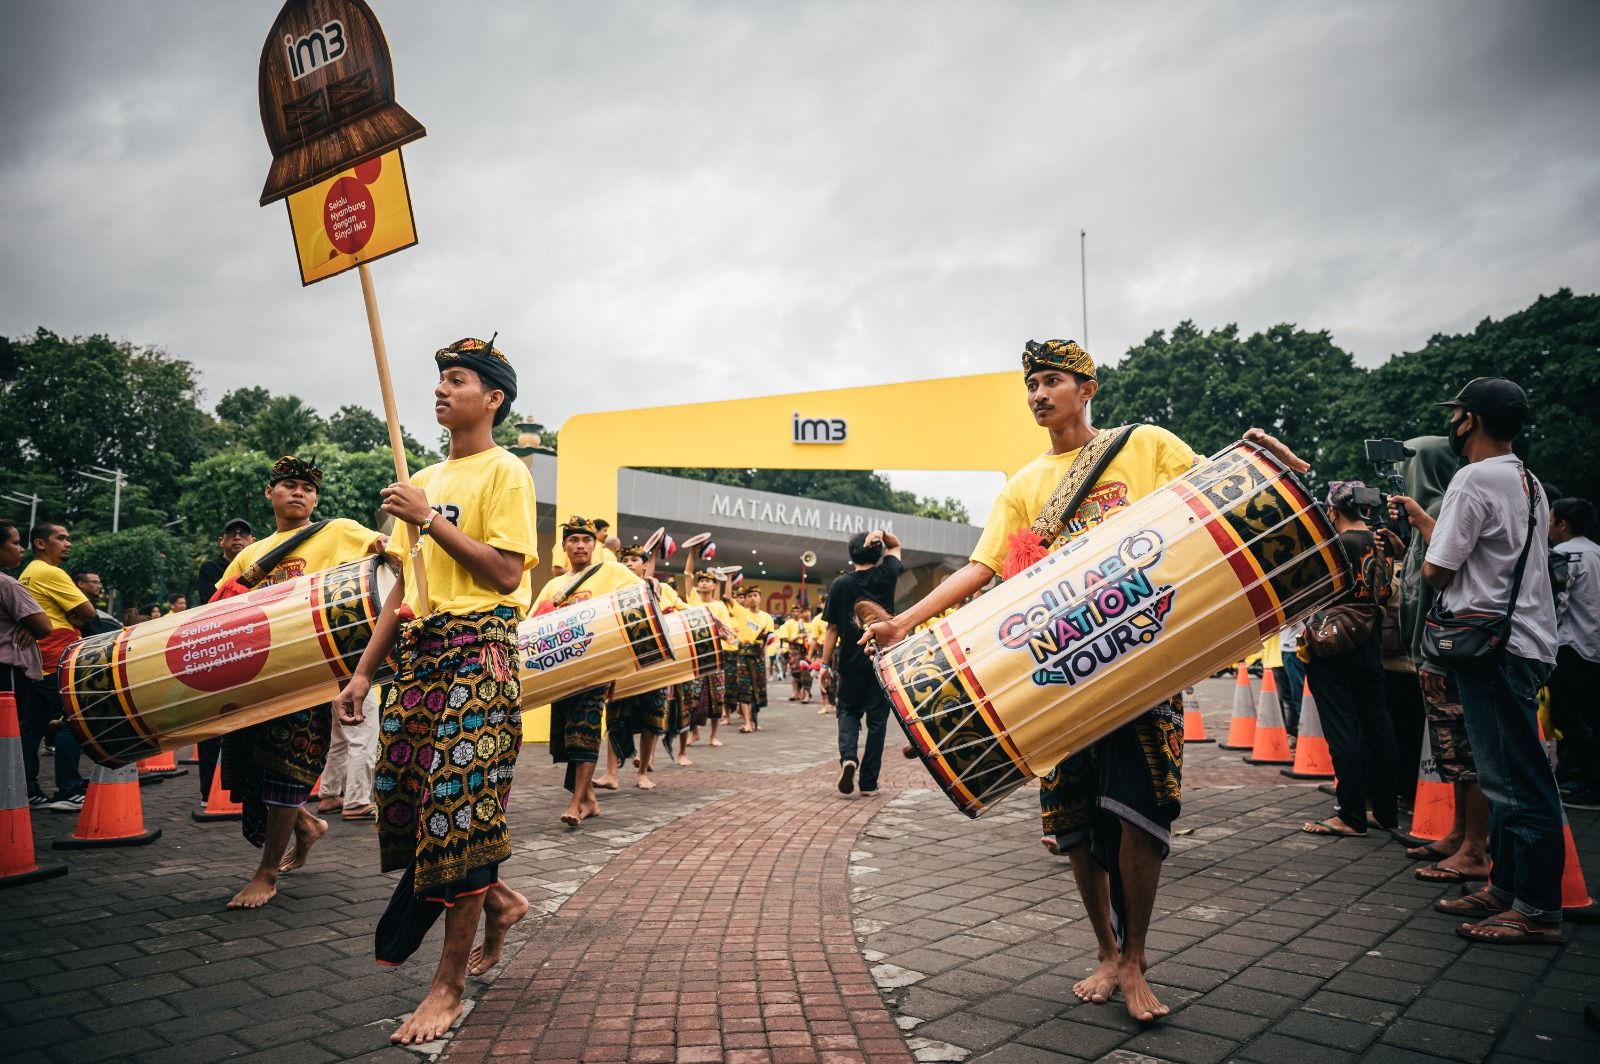 Parade Sinyal IM3 yang merepresentasikan keragaman budaya setempat, mulai dari komunitas hobi anak muda, pemain musik tradisional Gendang Beleq, hingga kelompok seni Kecimol